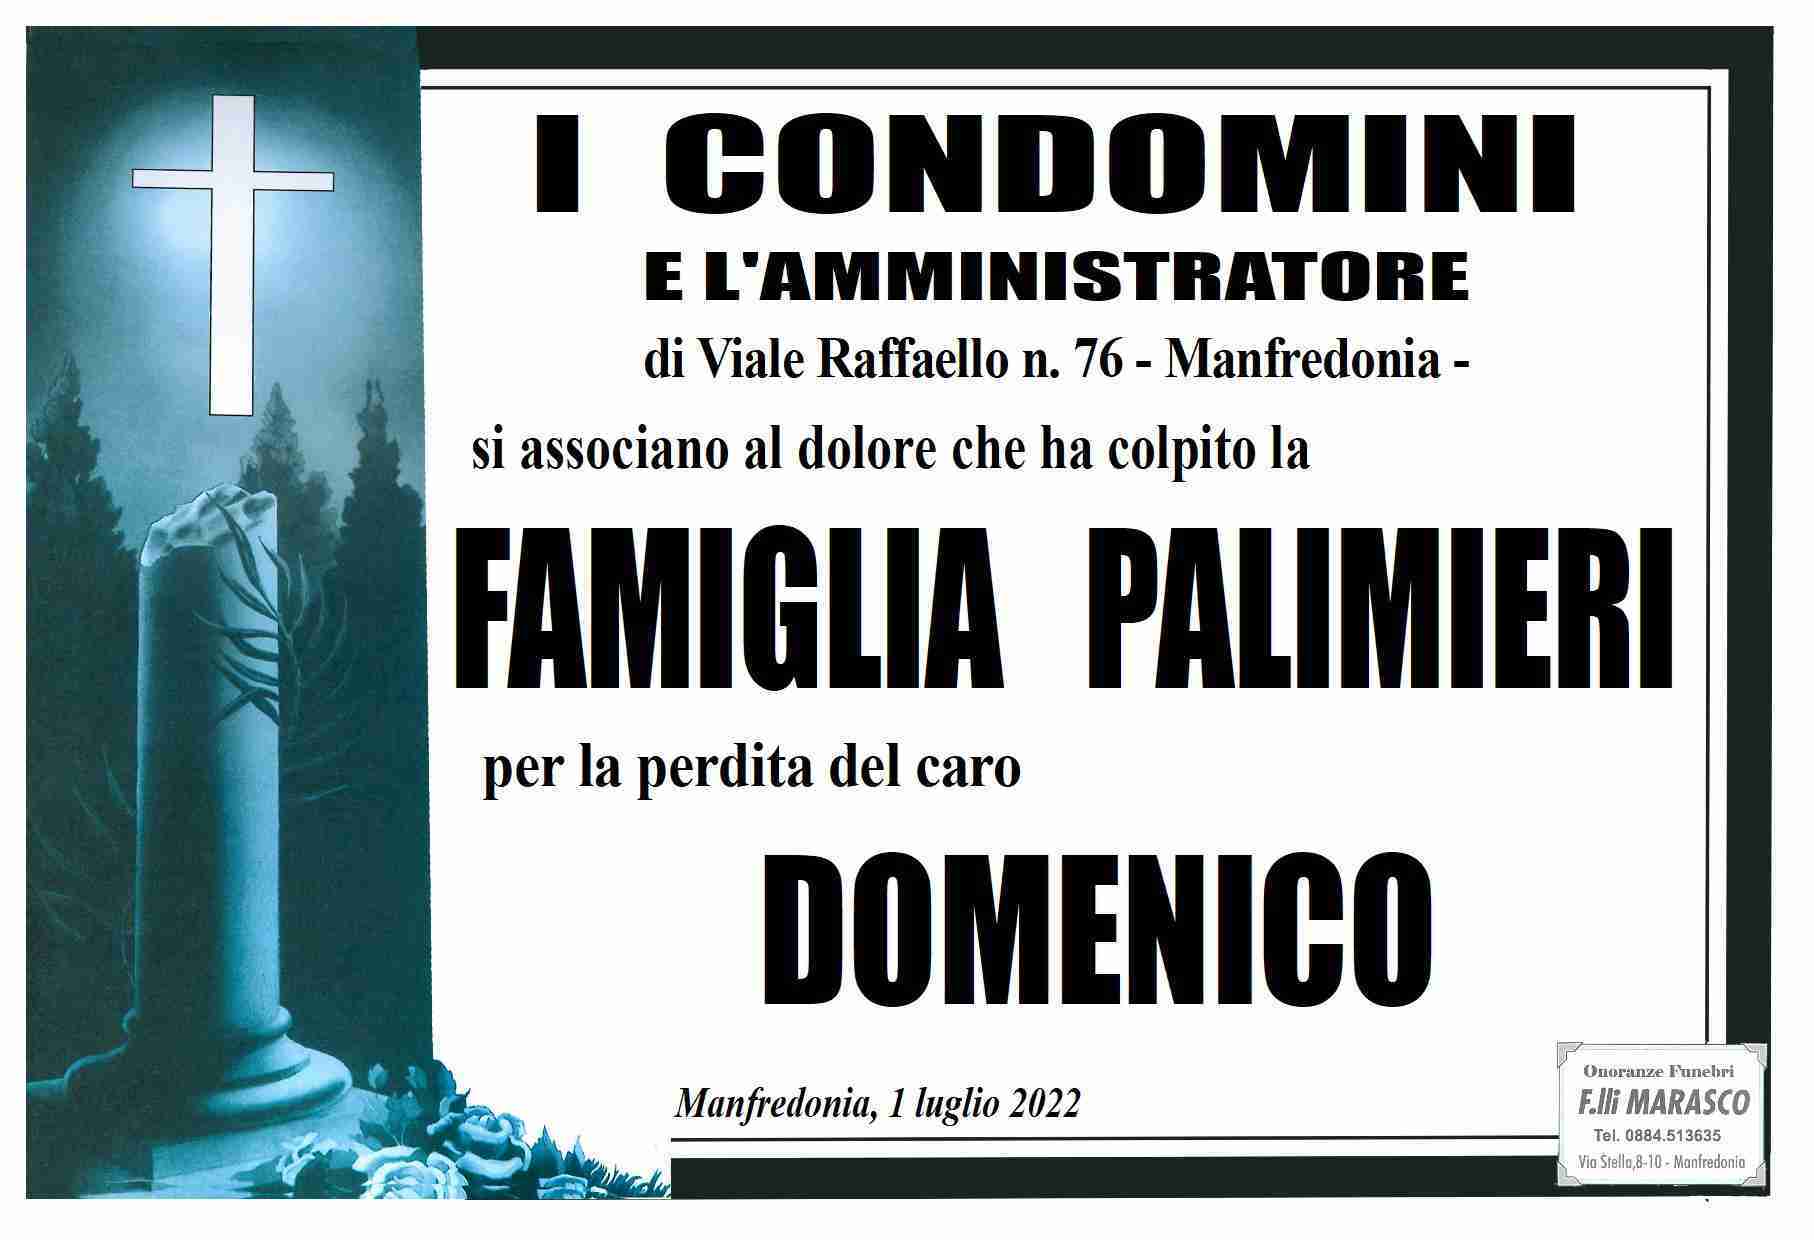 Domenico Palmieri